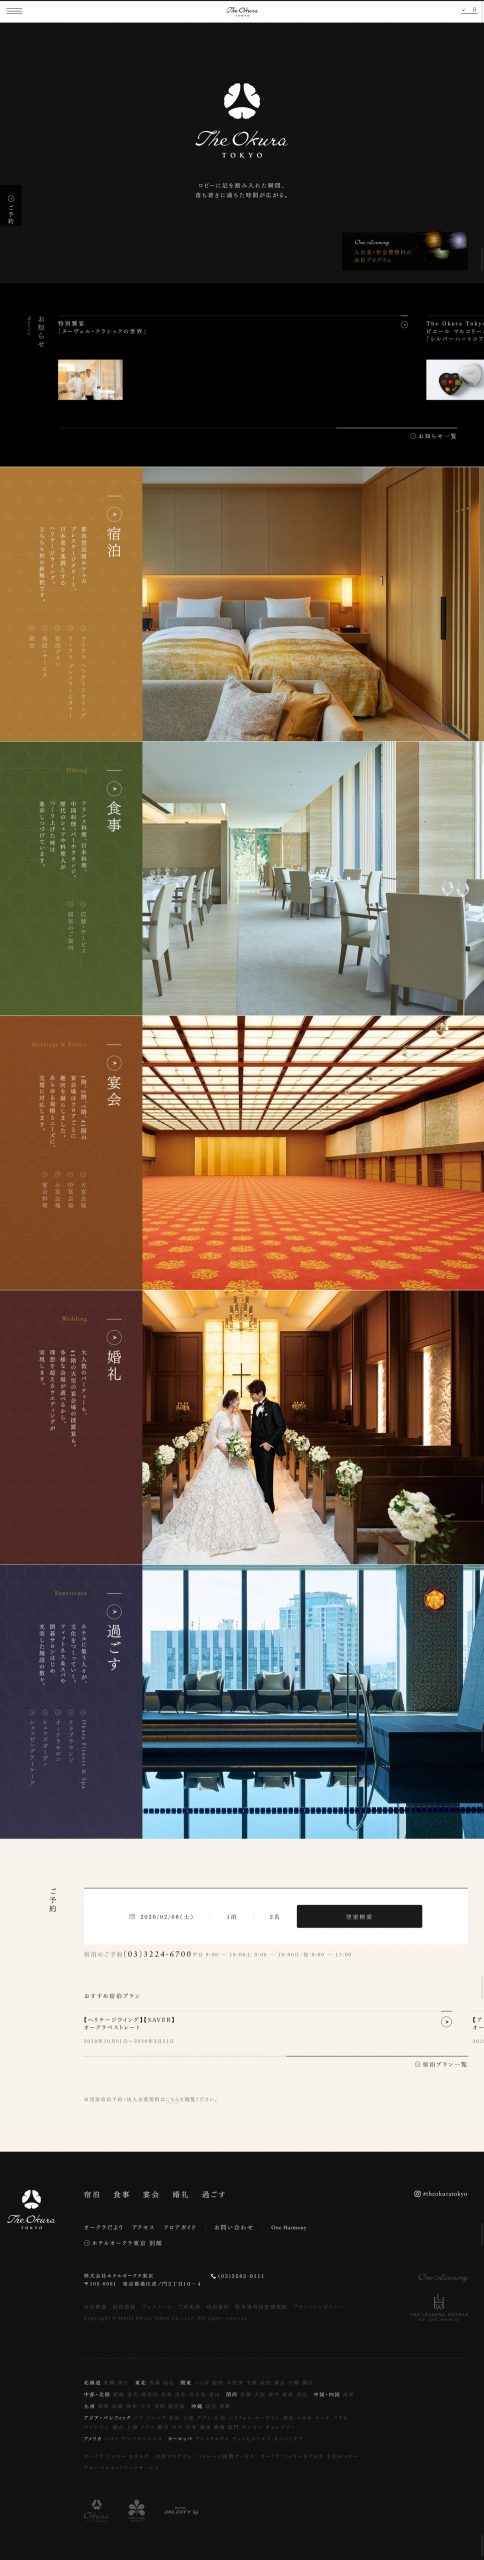 ホテル・旅館 ホームページ制作 WEBデザイン参考ギャラリー The Okura Tokyo